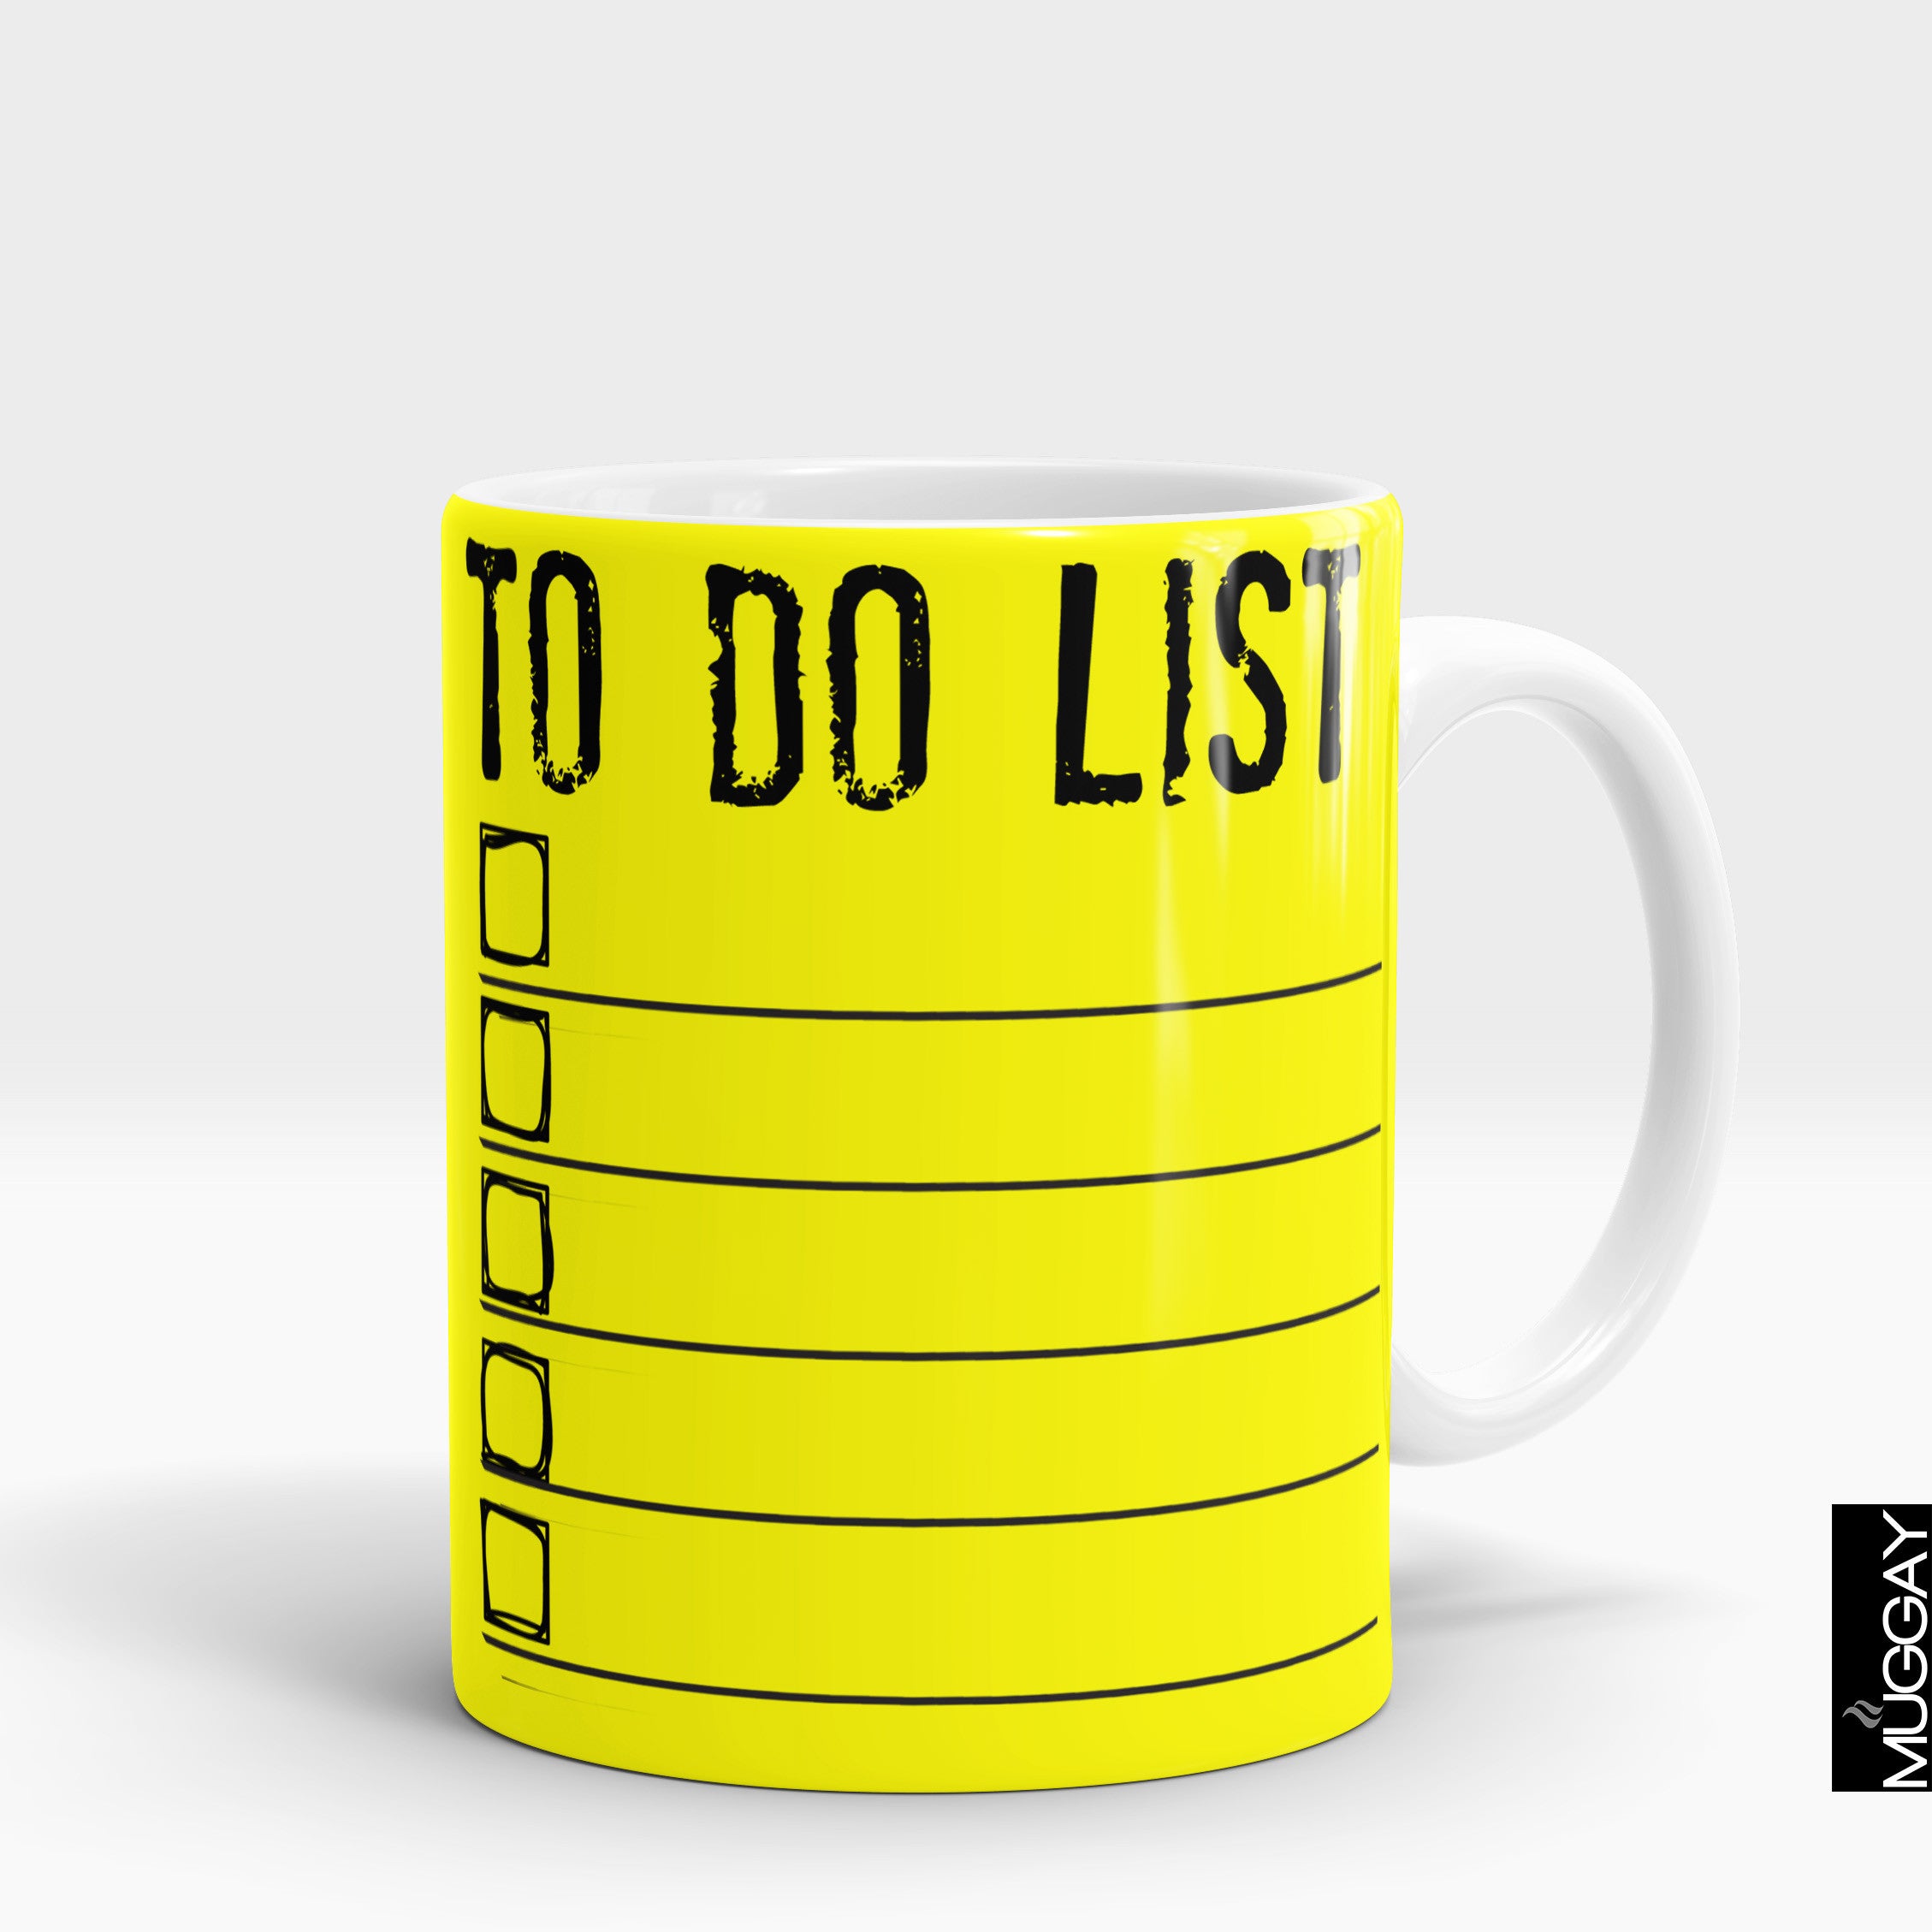 To-Do List mug